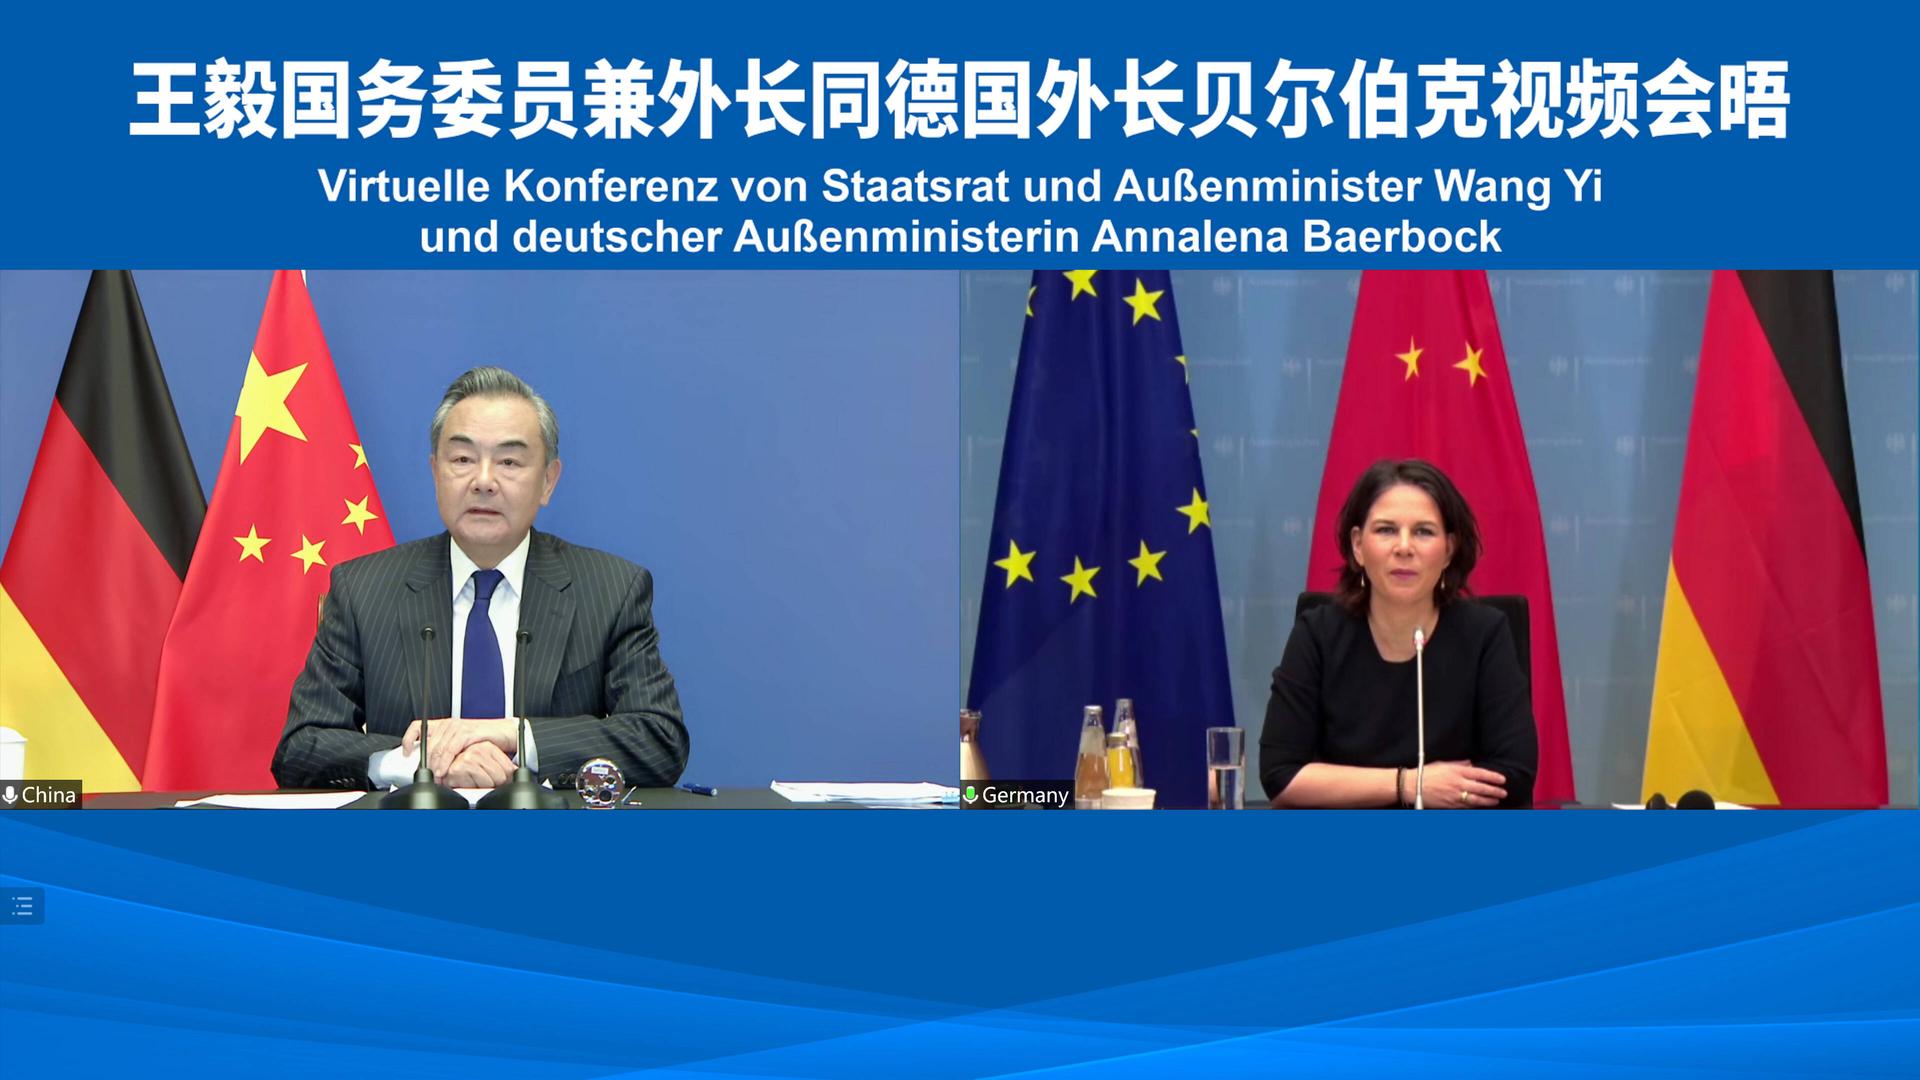 Massen-Internierung von Uiguren - Peking warnt Deutschland davor, sich mit Kritik an China selbst zu schaden